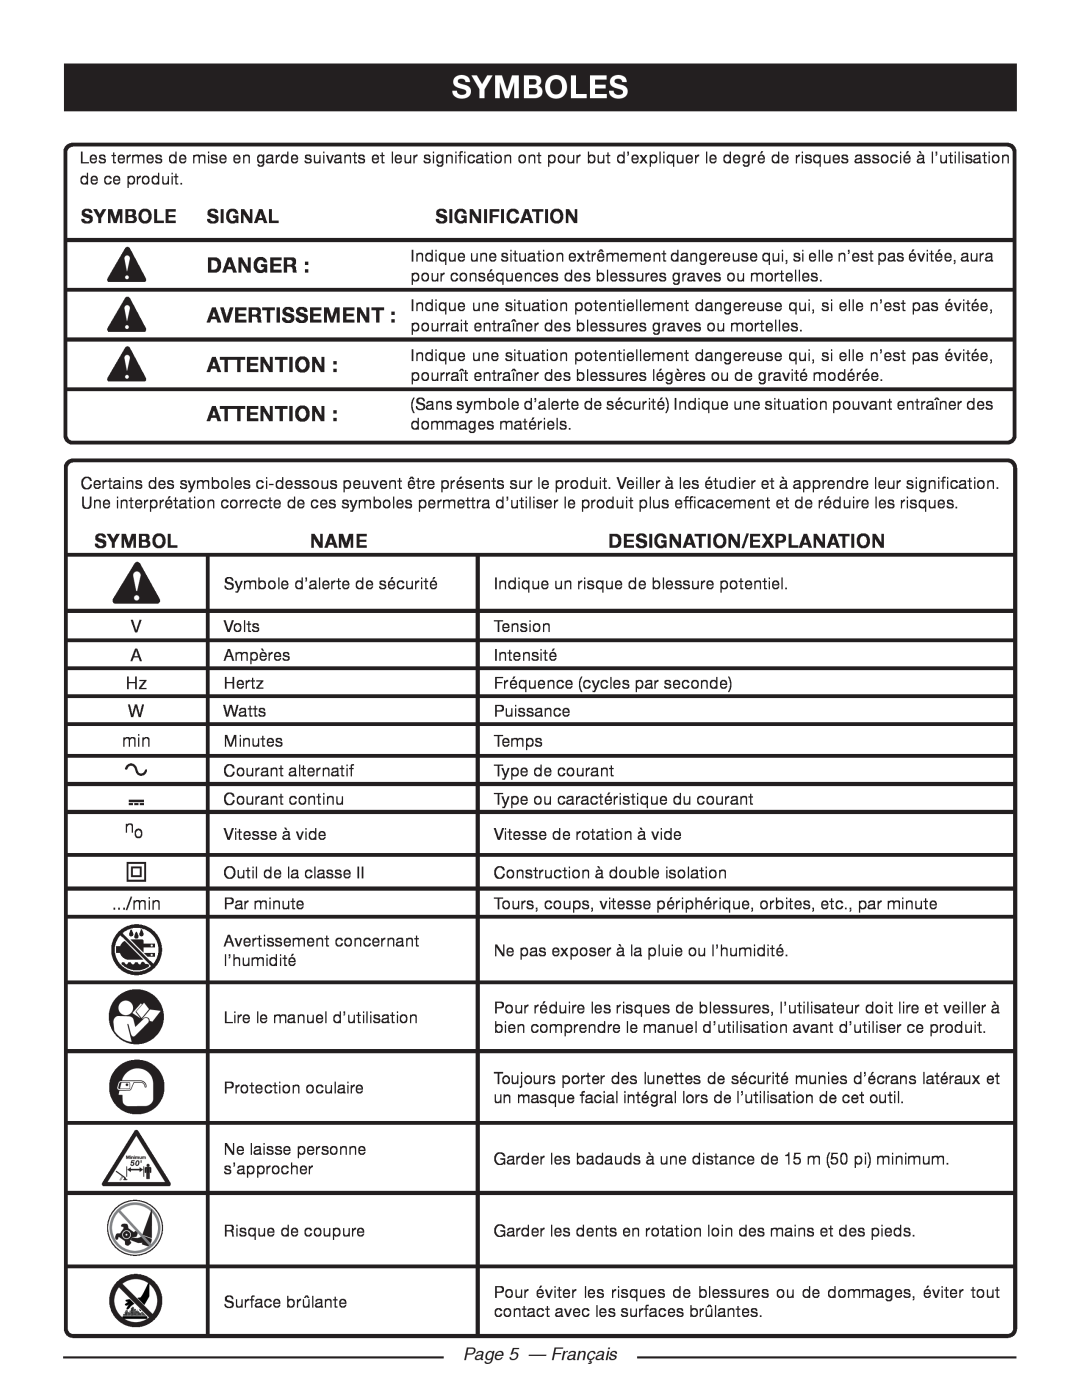 Homelite UT46510 Symboles, Danger, Symbole Signal, Signification, Name, Designation/Explanation, Page 5 - Français 